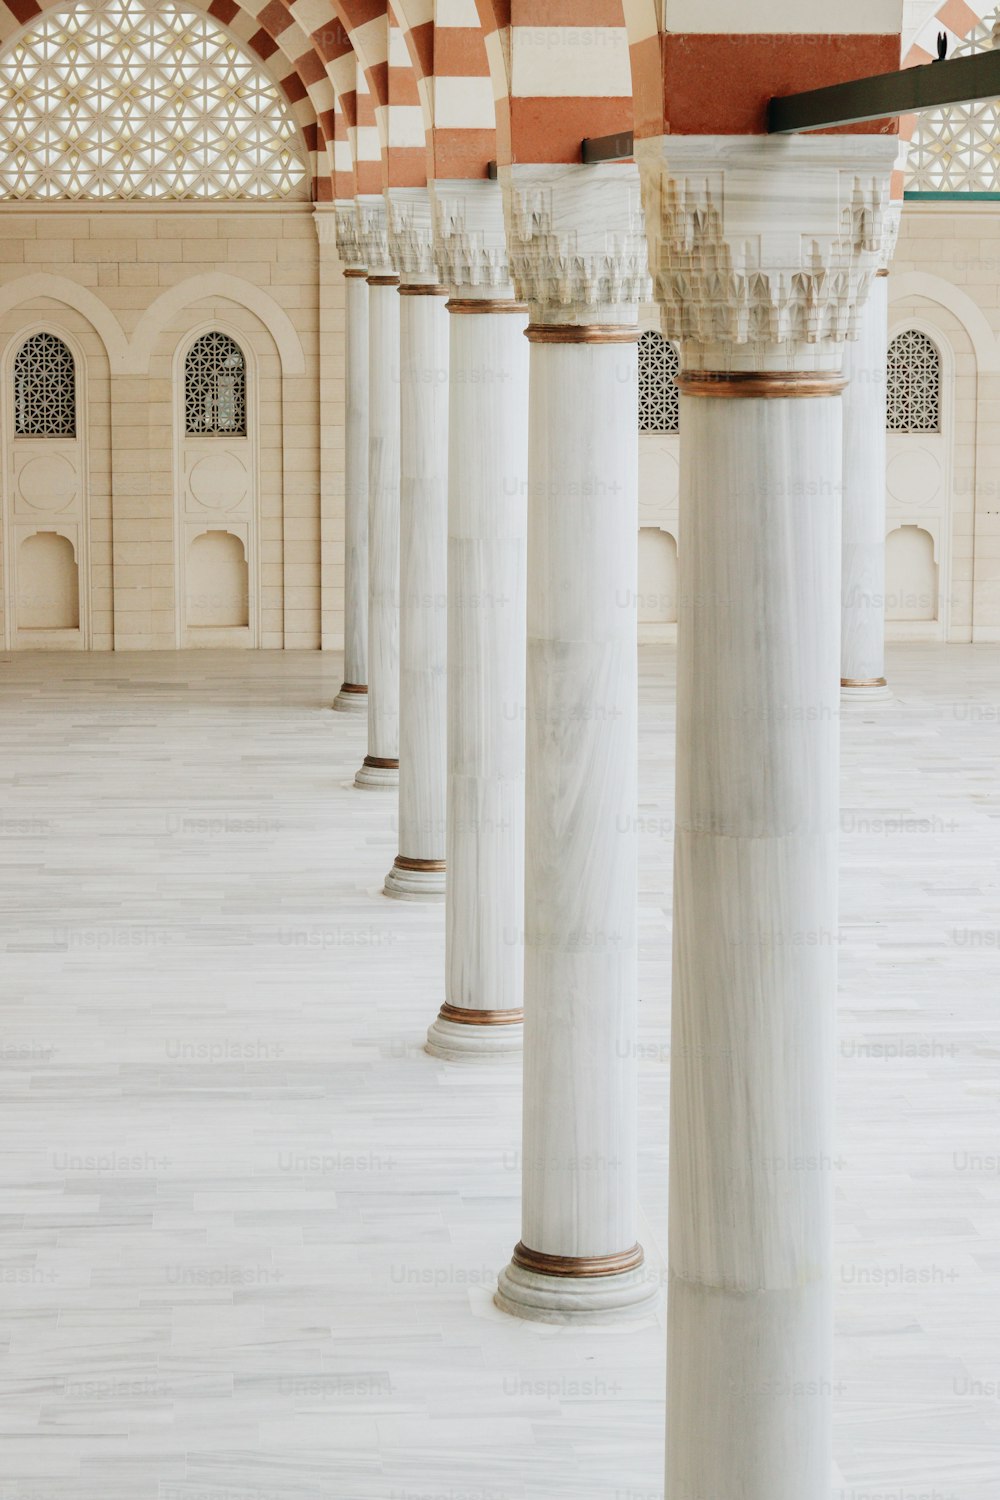 une rangée de piliers de marbre blanc dans un bâtiment